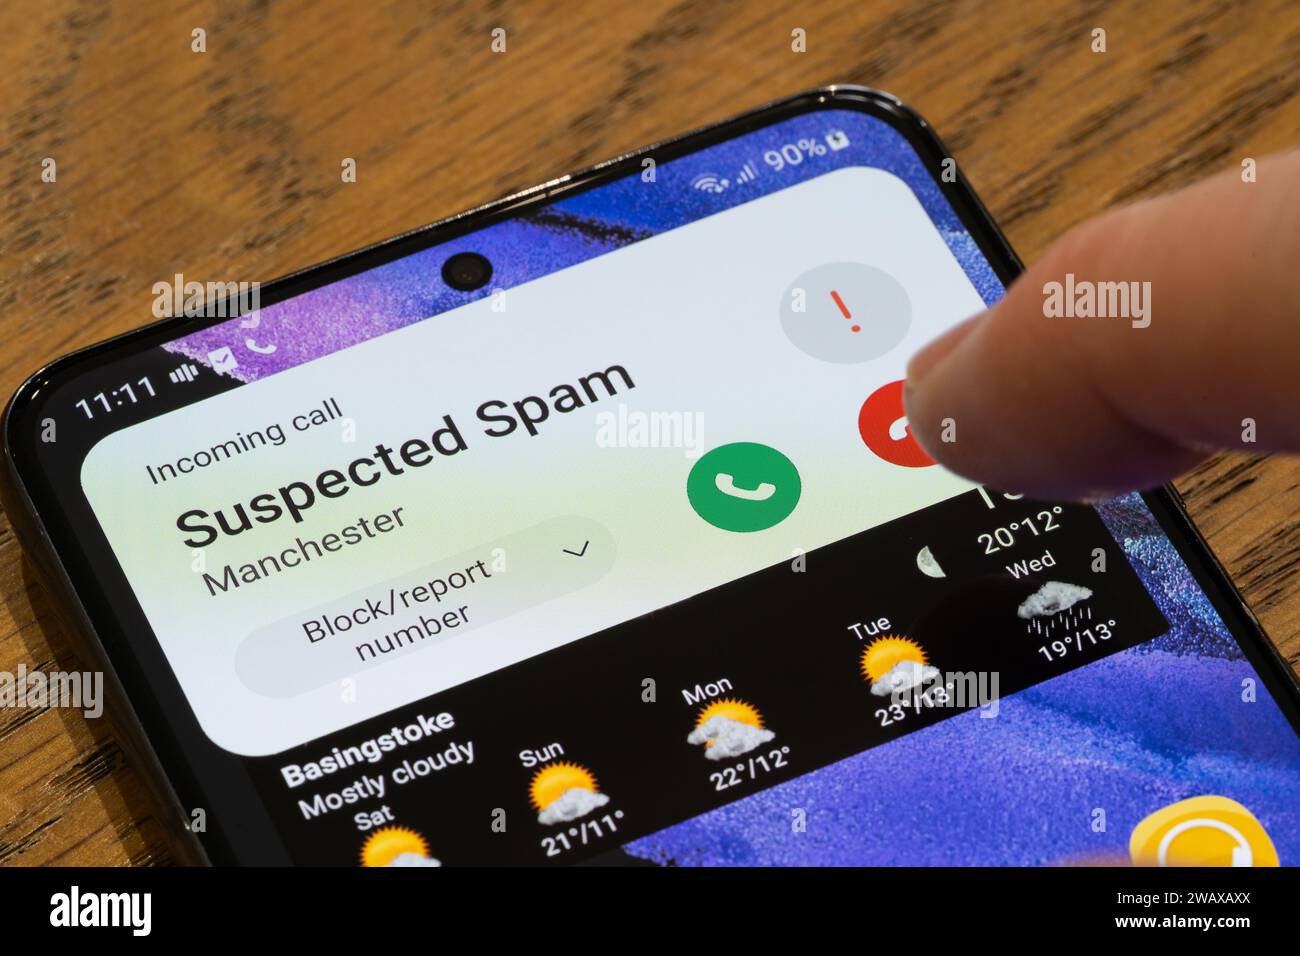 Un écran de téléphone mobile montrant un appel suspect entrant avec un doigt passant au-dessus du bouton raccrocher, Royaume-Uni. Thème : appels à froid, appels gênants Banque D'Images